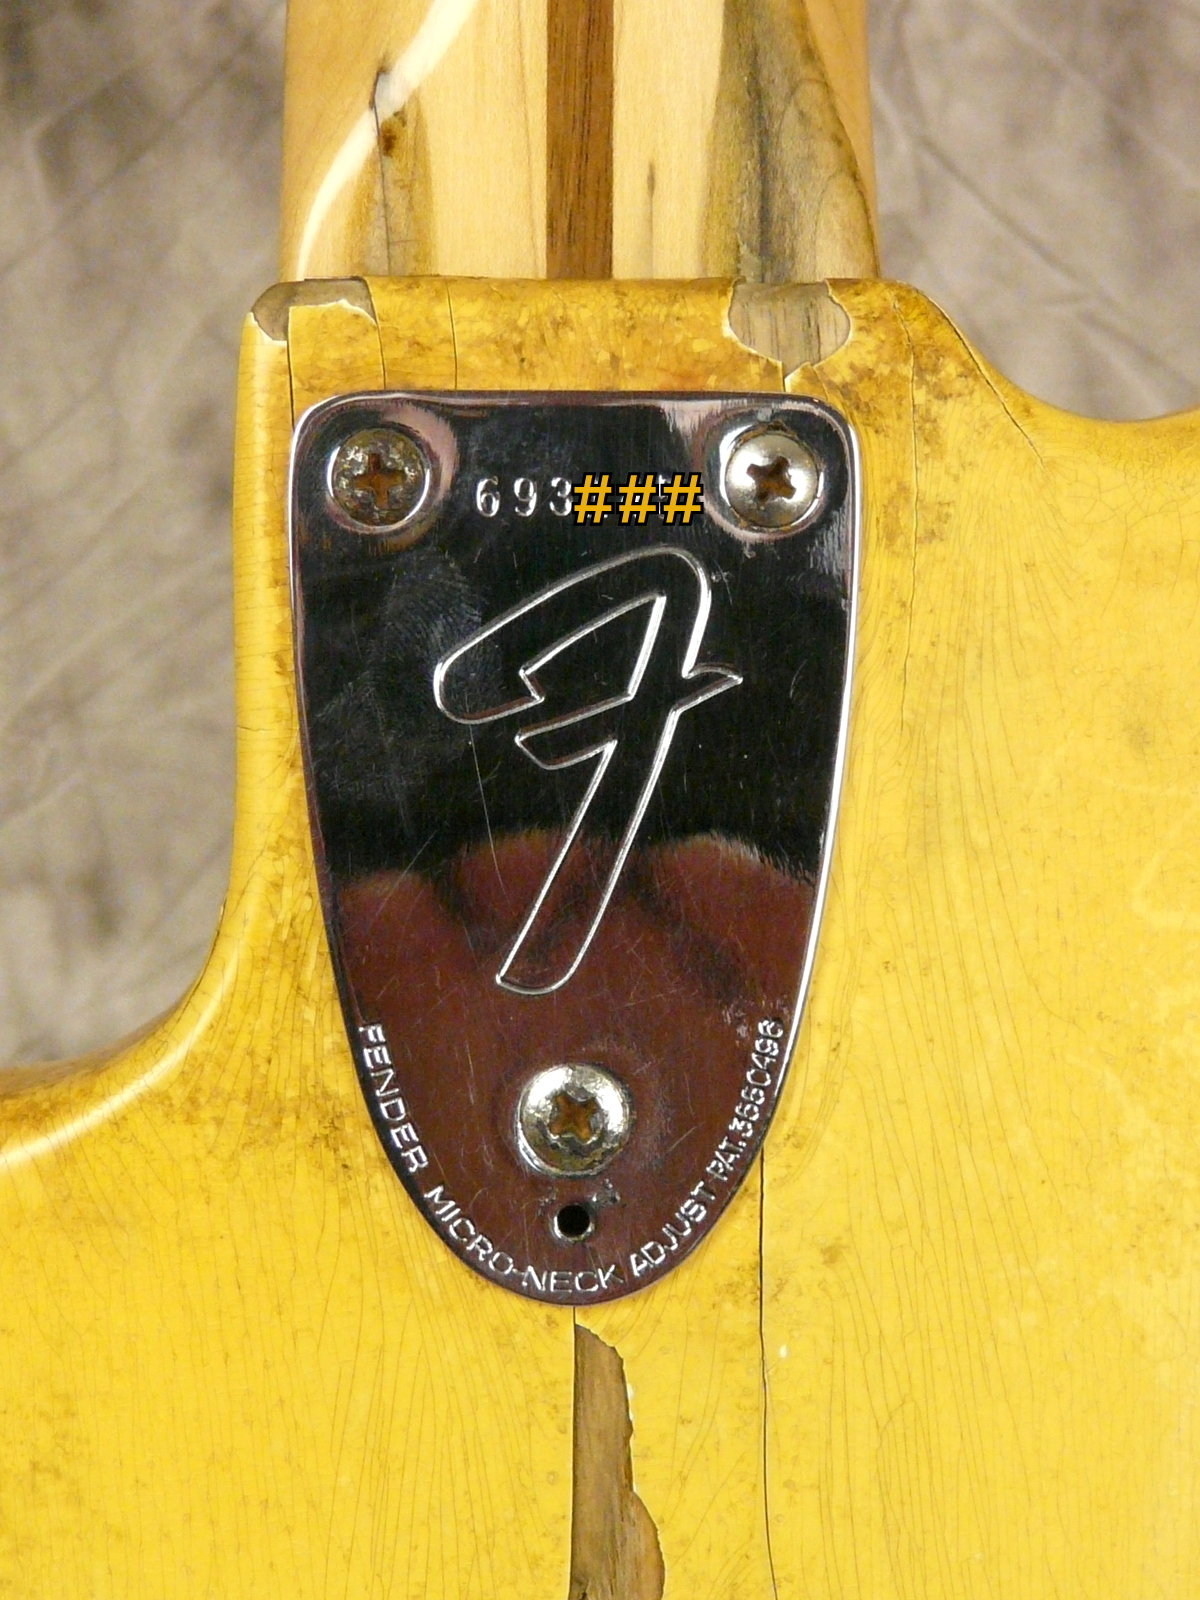 Fender_Jazz_bass-1976-olympic_white-007.JPG